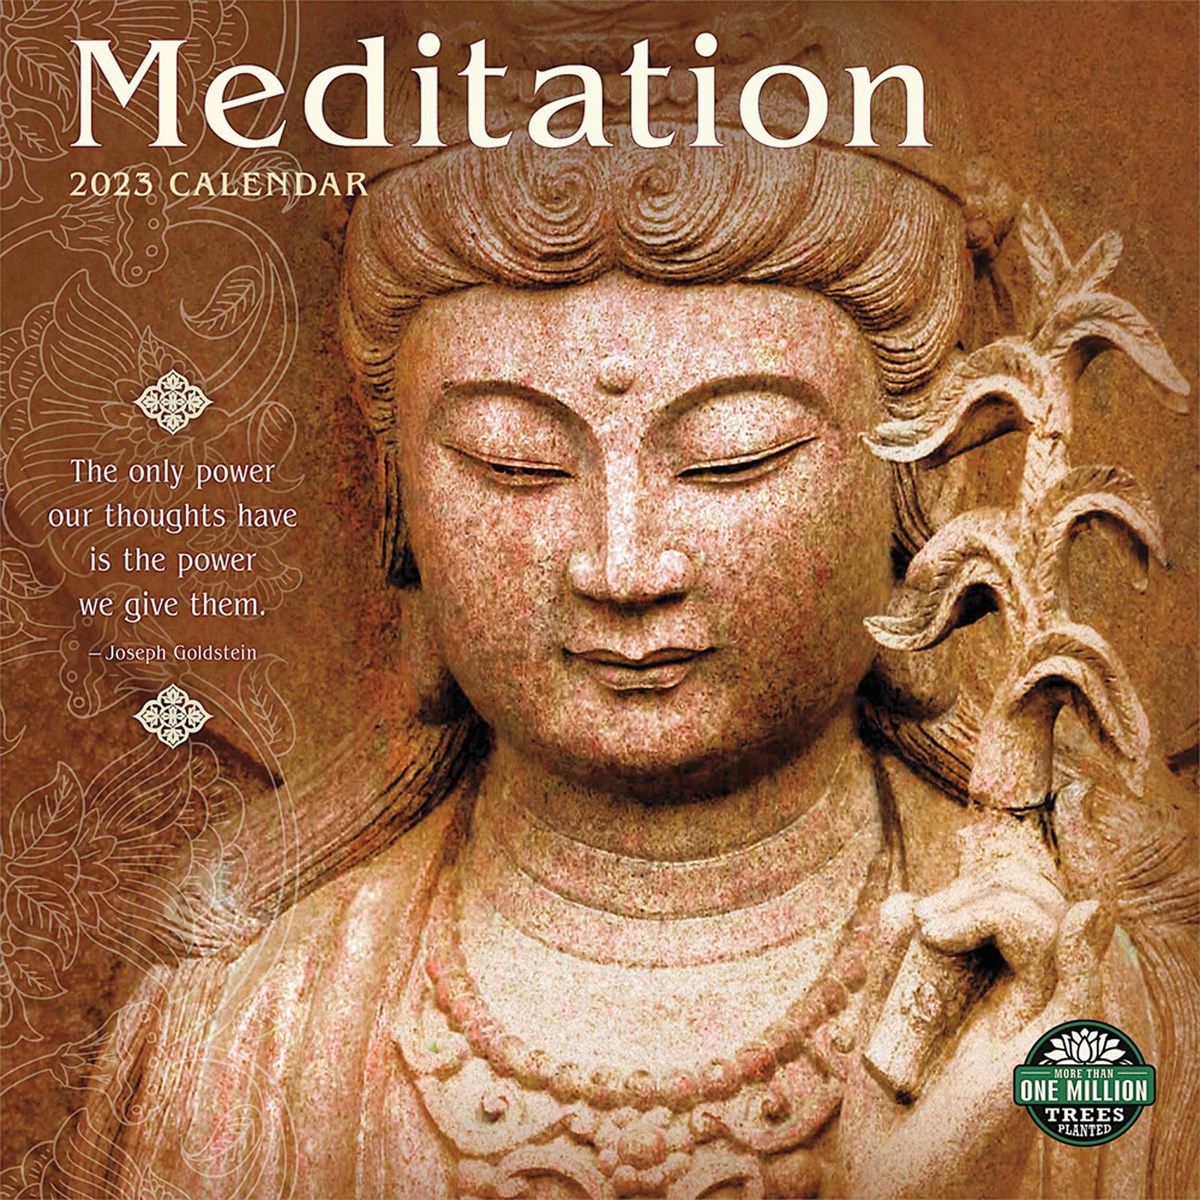 Meditation 2023 Calendars